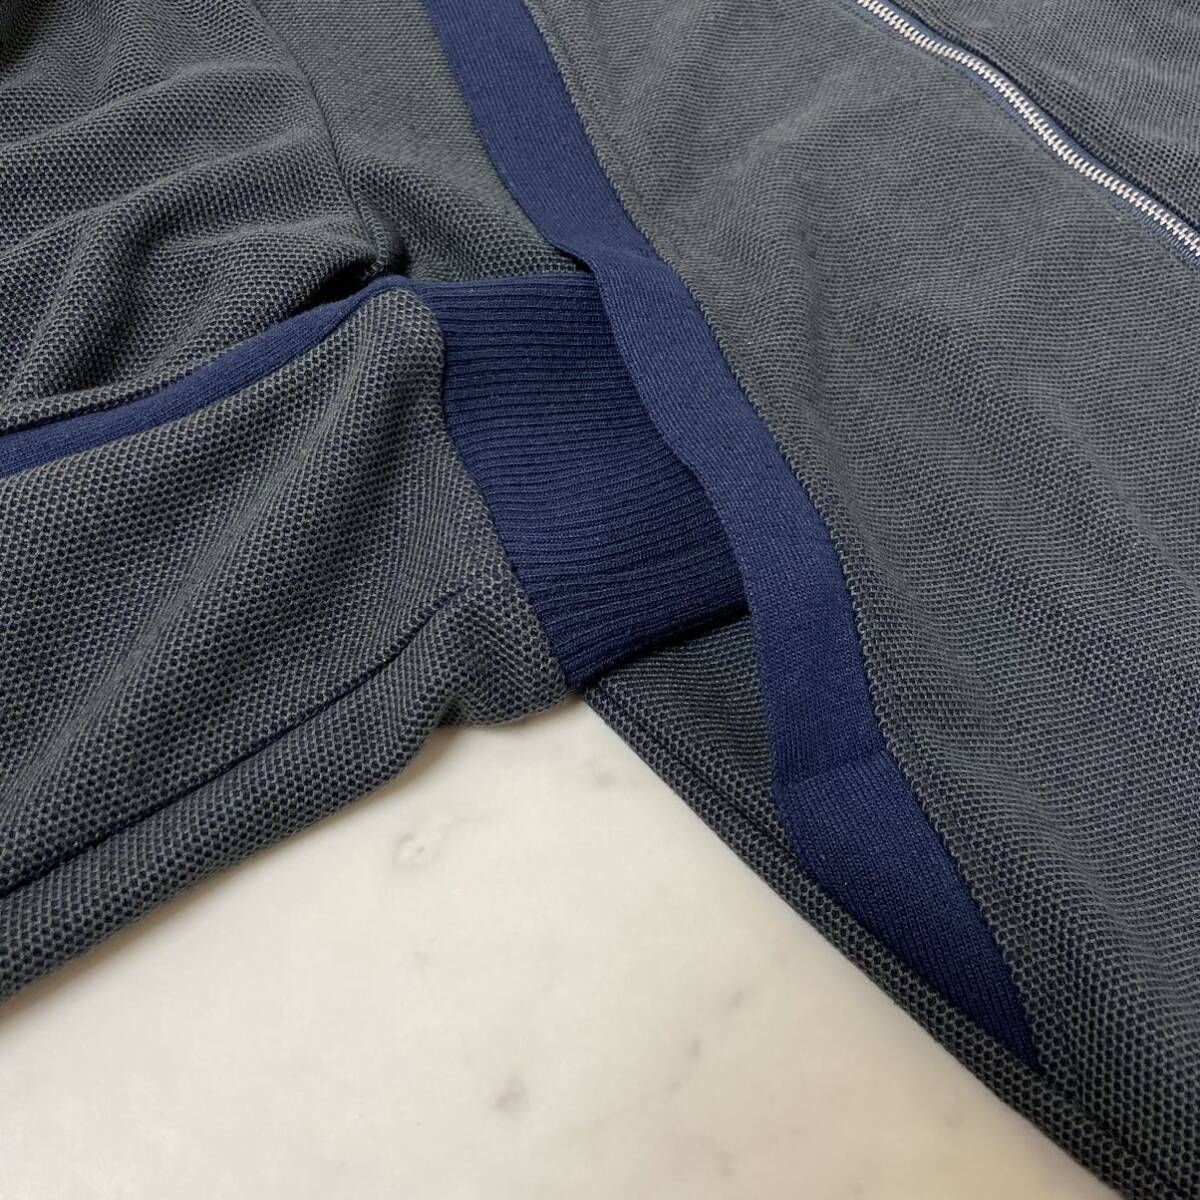  прекрасный товар * Tom Brown THOM BROWNE спортивная куртка блузон джерси size2/M соответствует bai цвет W Zip сделано в Японии хаки темно-синий мужской 